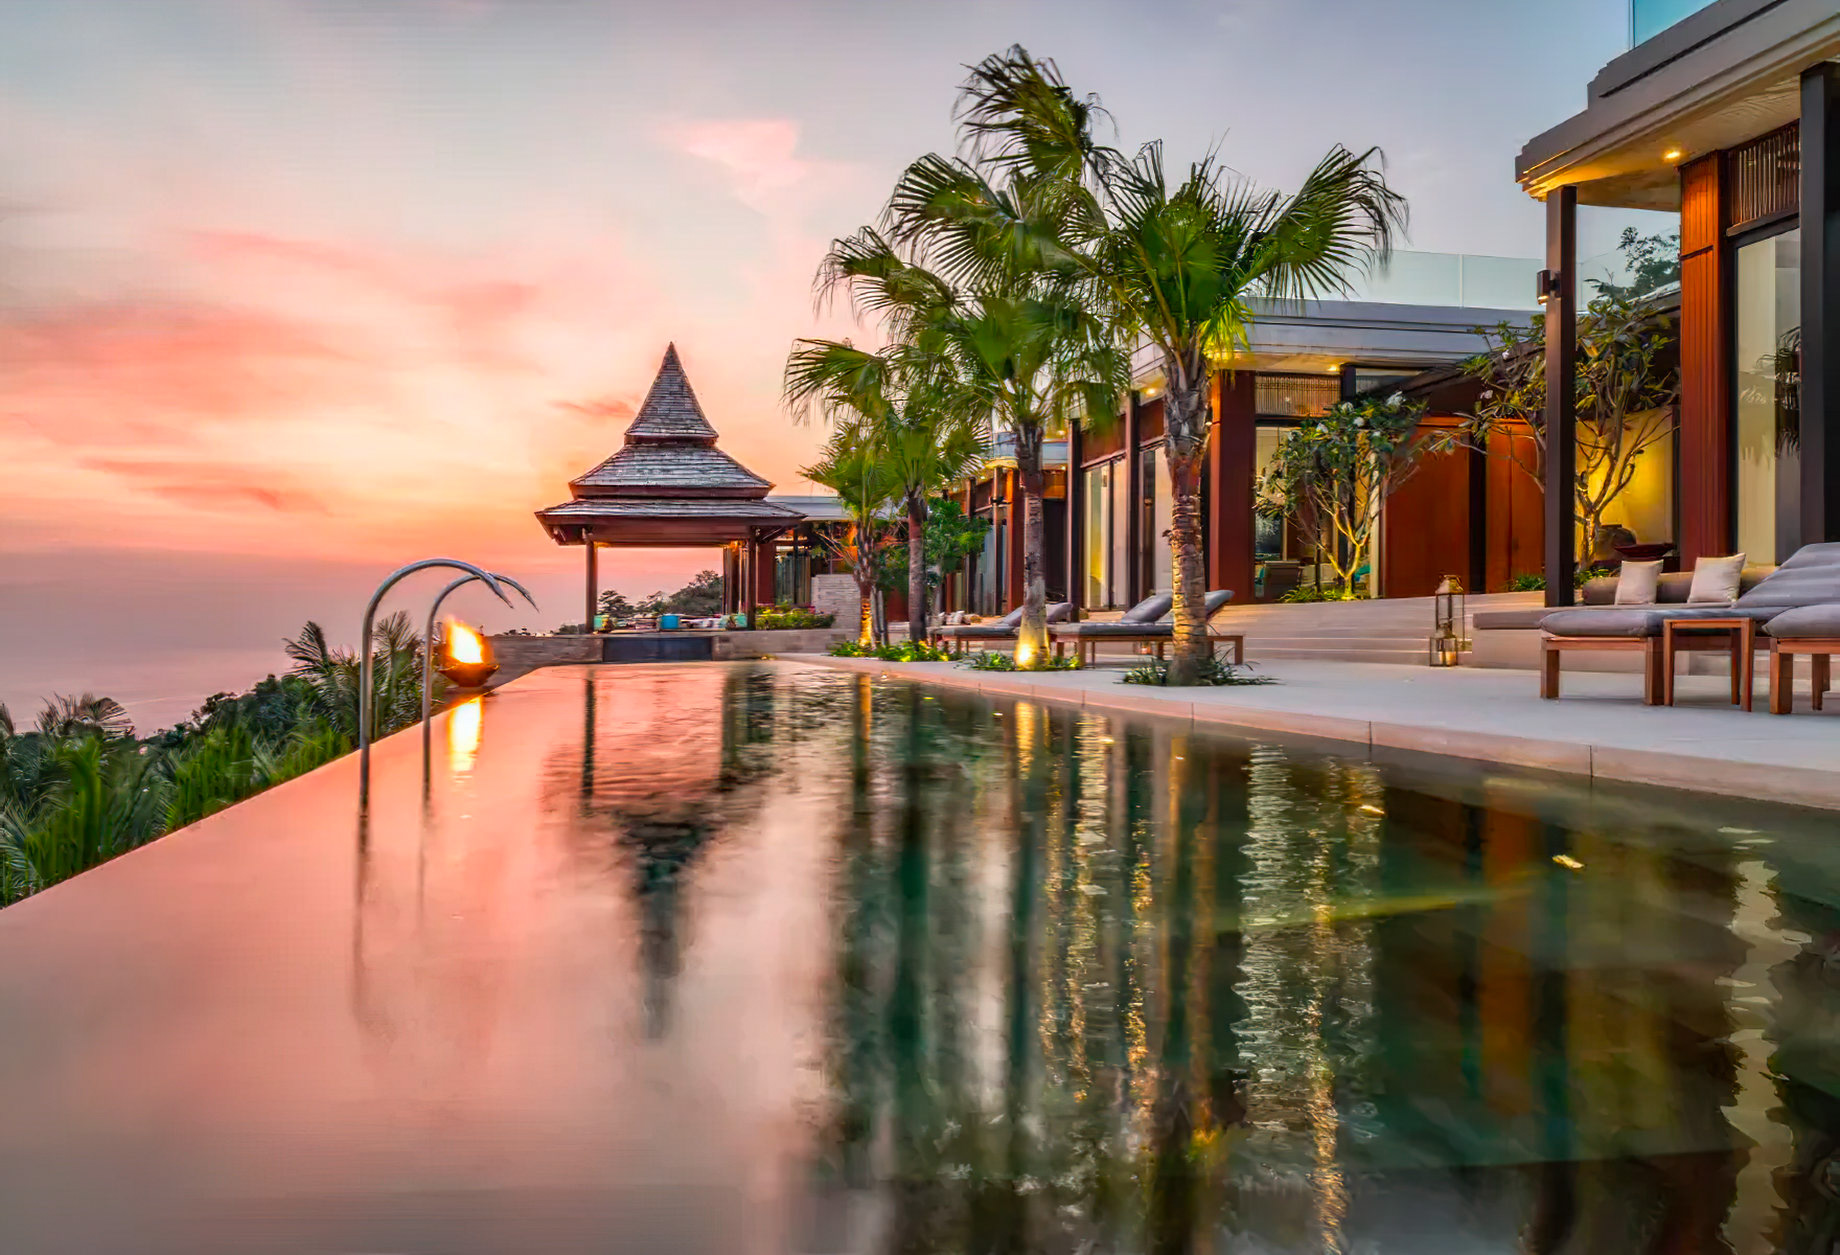 Anantara Layan Phuket Resort & Residences – Thailand – Sea View Residence Sunset